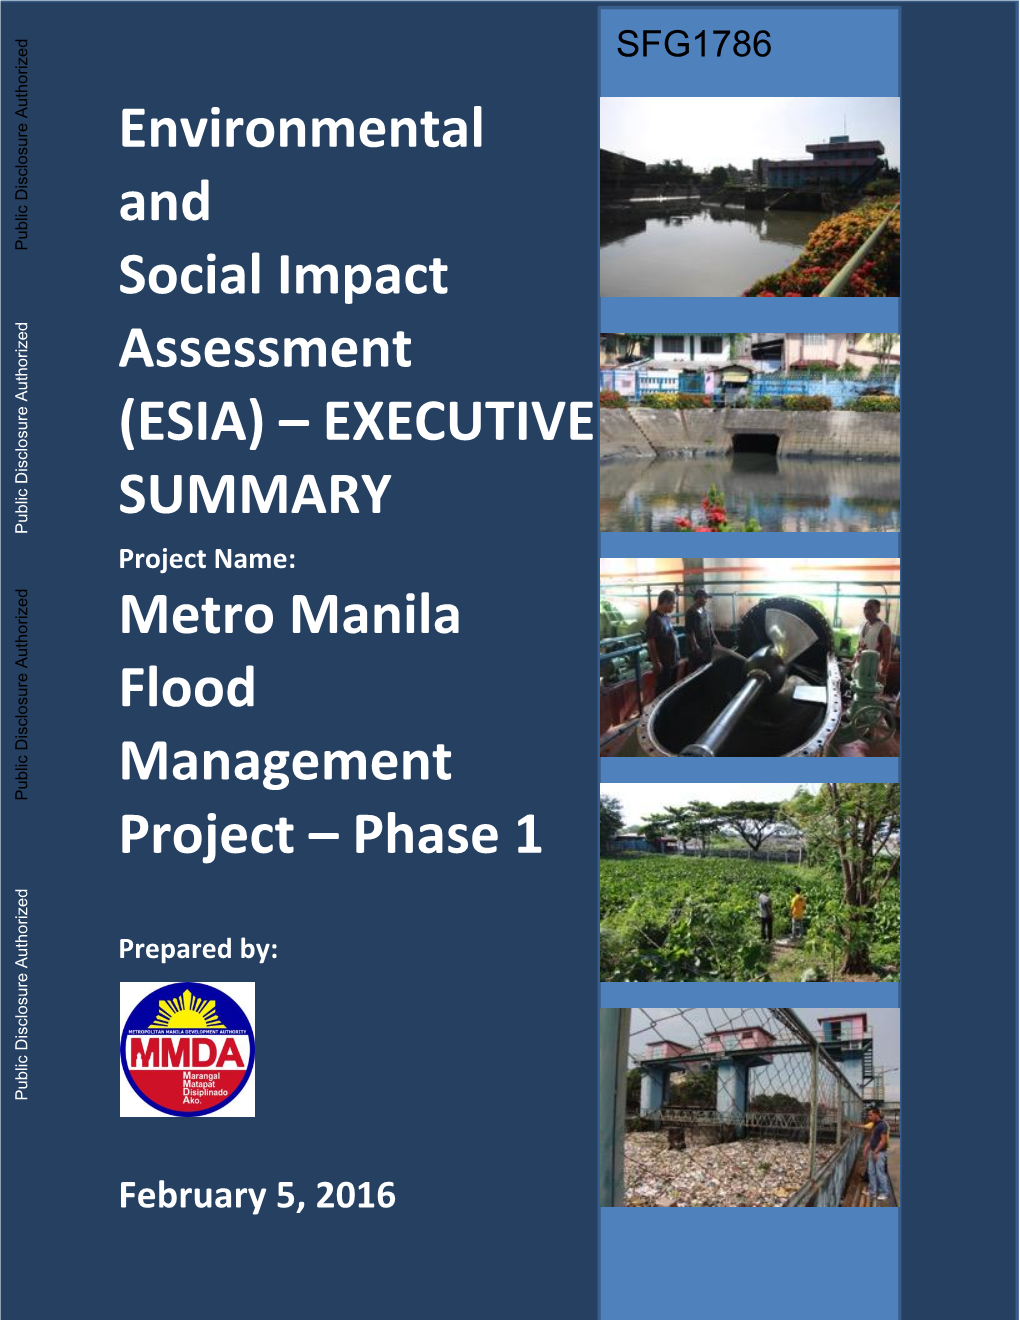 Metro Manila Flood Management Project - Phase 1